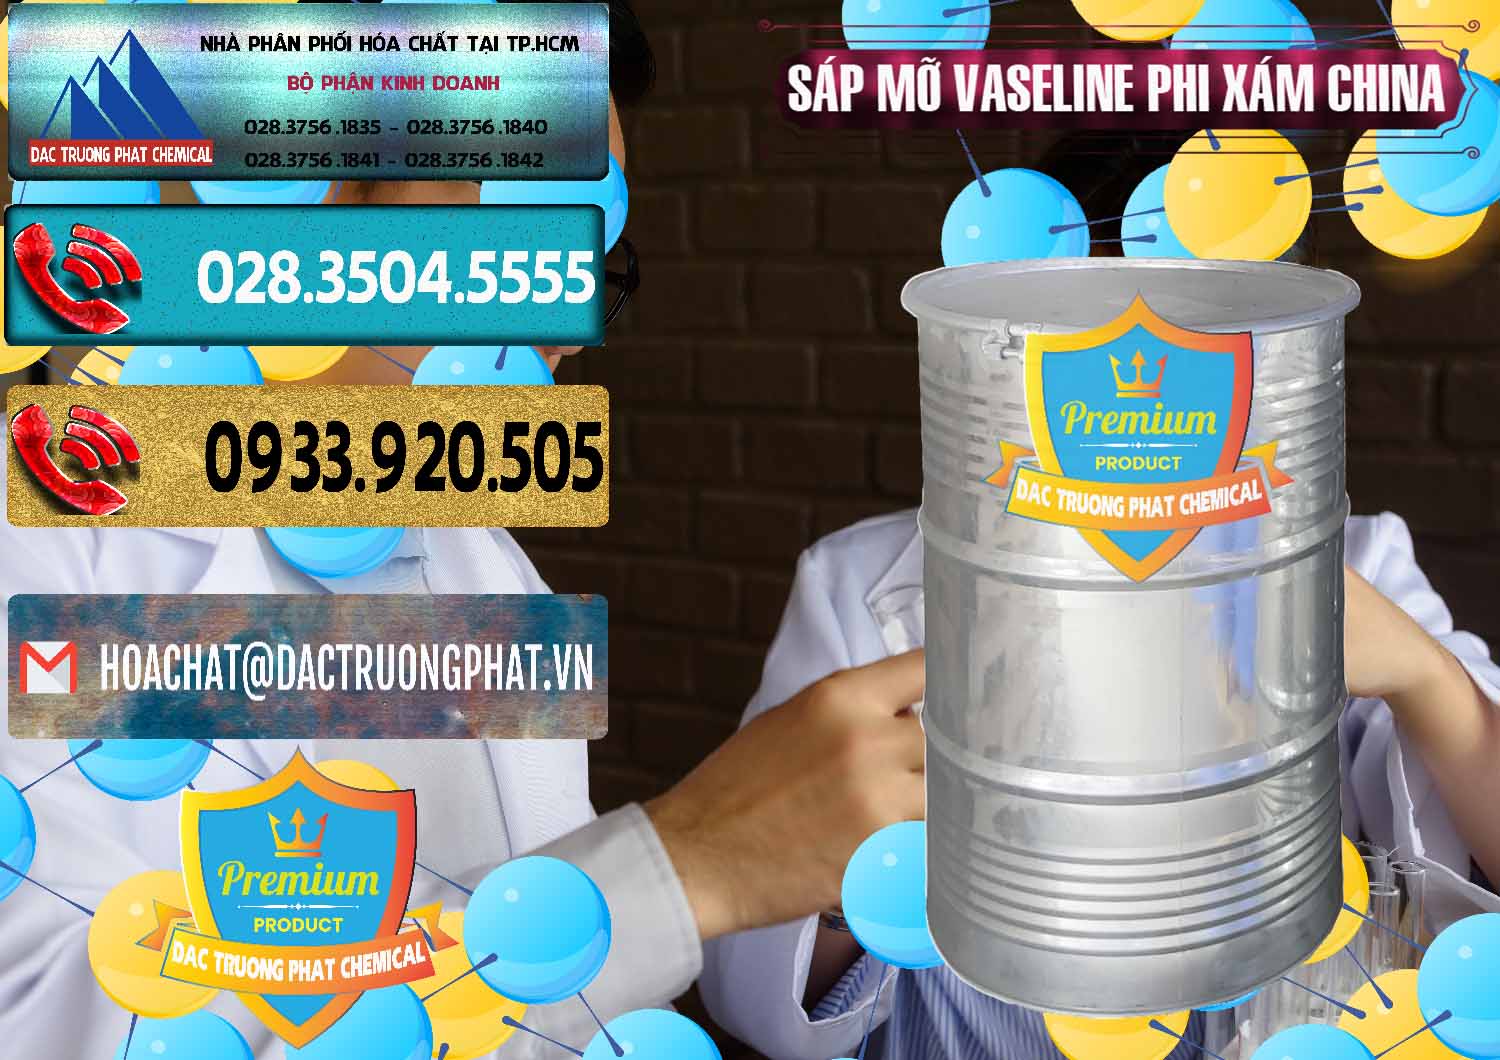 Công ty chuyên bán - phân phối Sáp Mỡ Vaseline Phi Xám Trung Quốc China - 0291 - Công ty nhập khẩu - phân phối hóa chất tại TP.HCM - hoachatdetnhuom.com